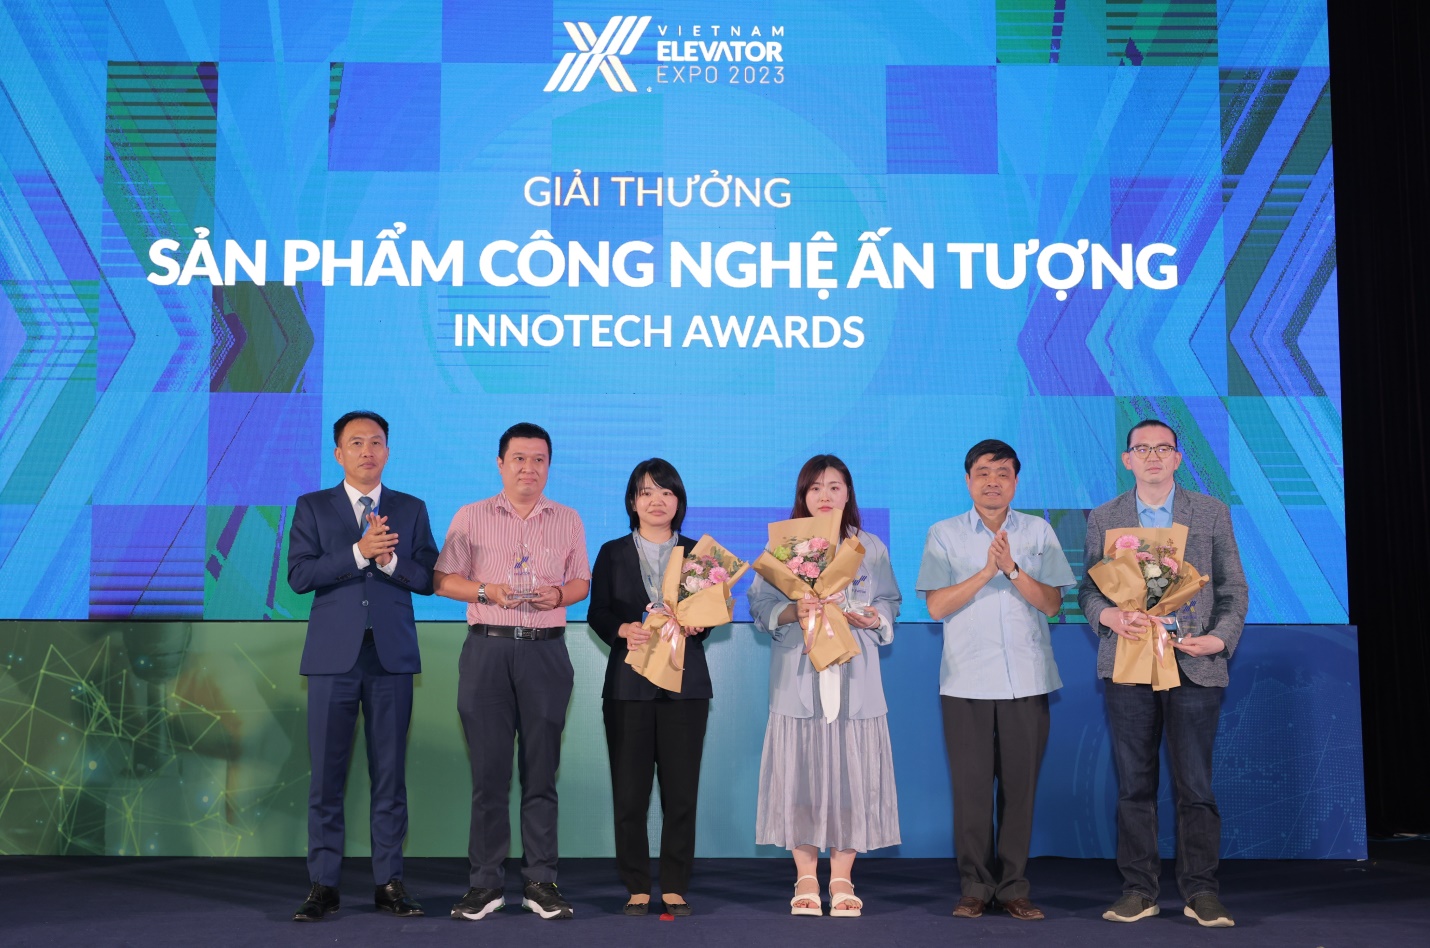 Trao giải hạng mục Sản phẩm công nghệ ấn tượng Innotech Award